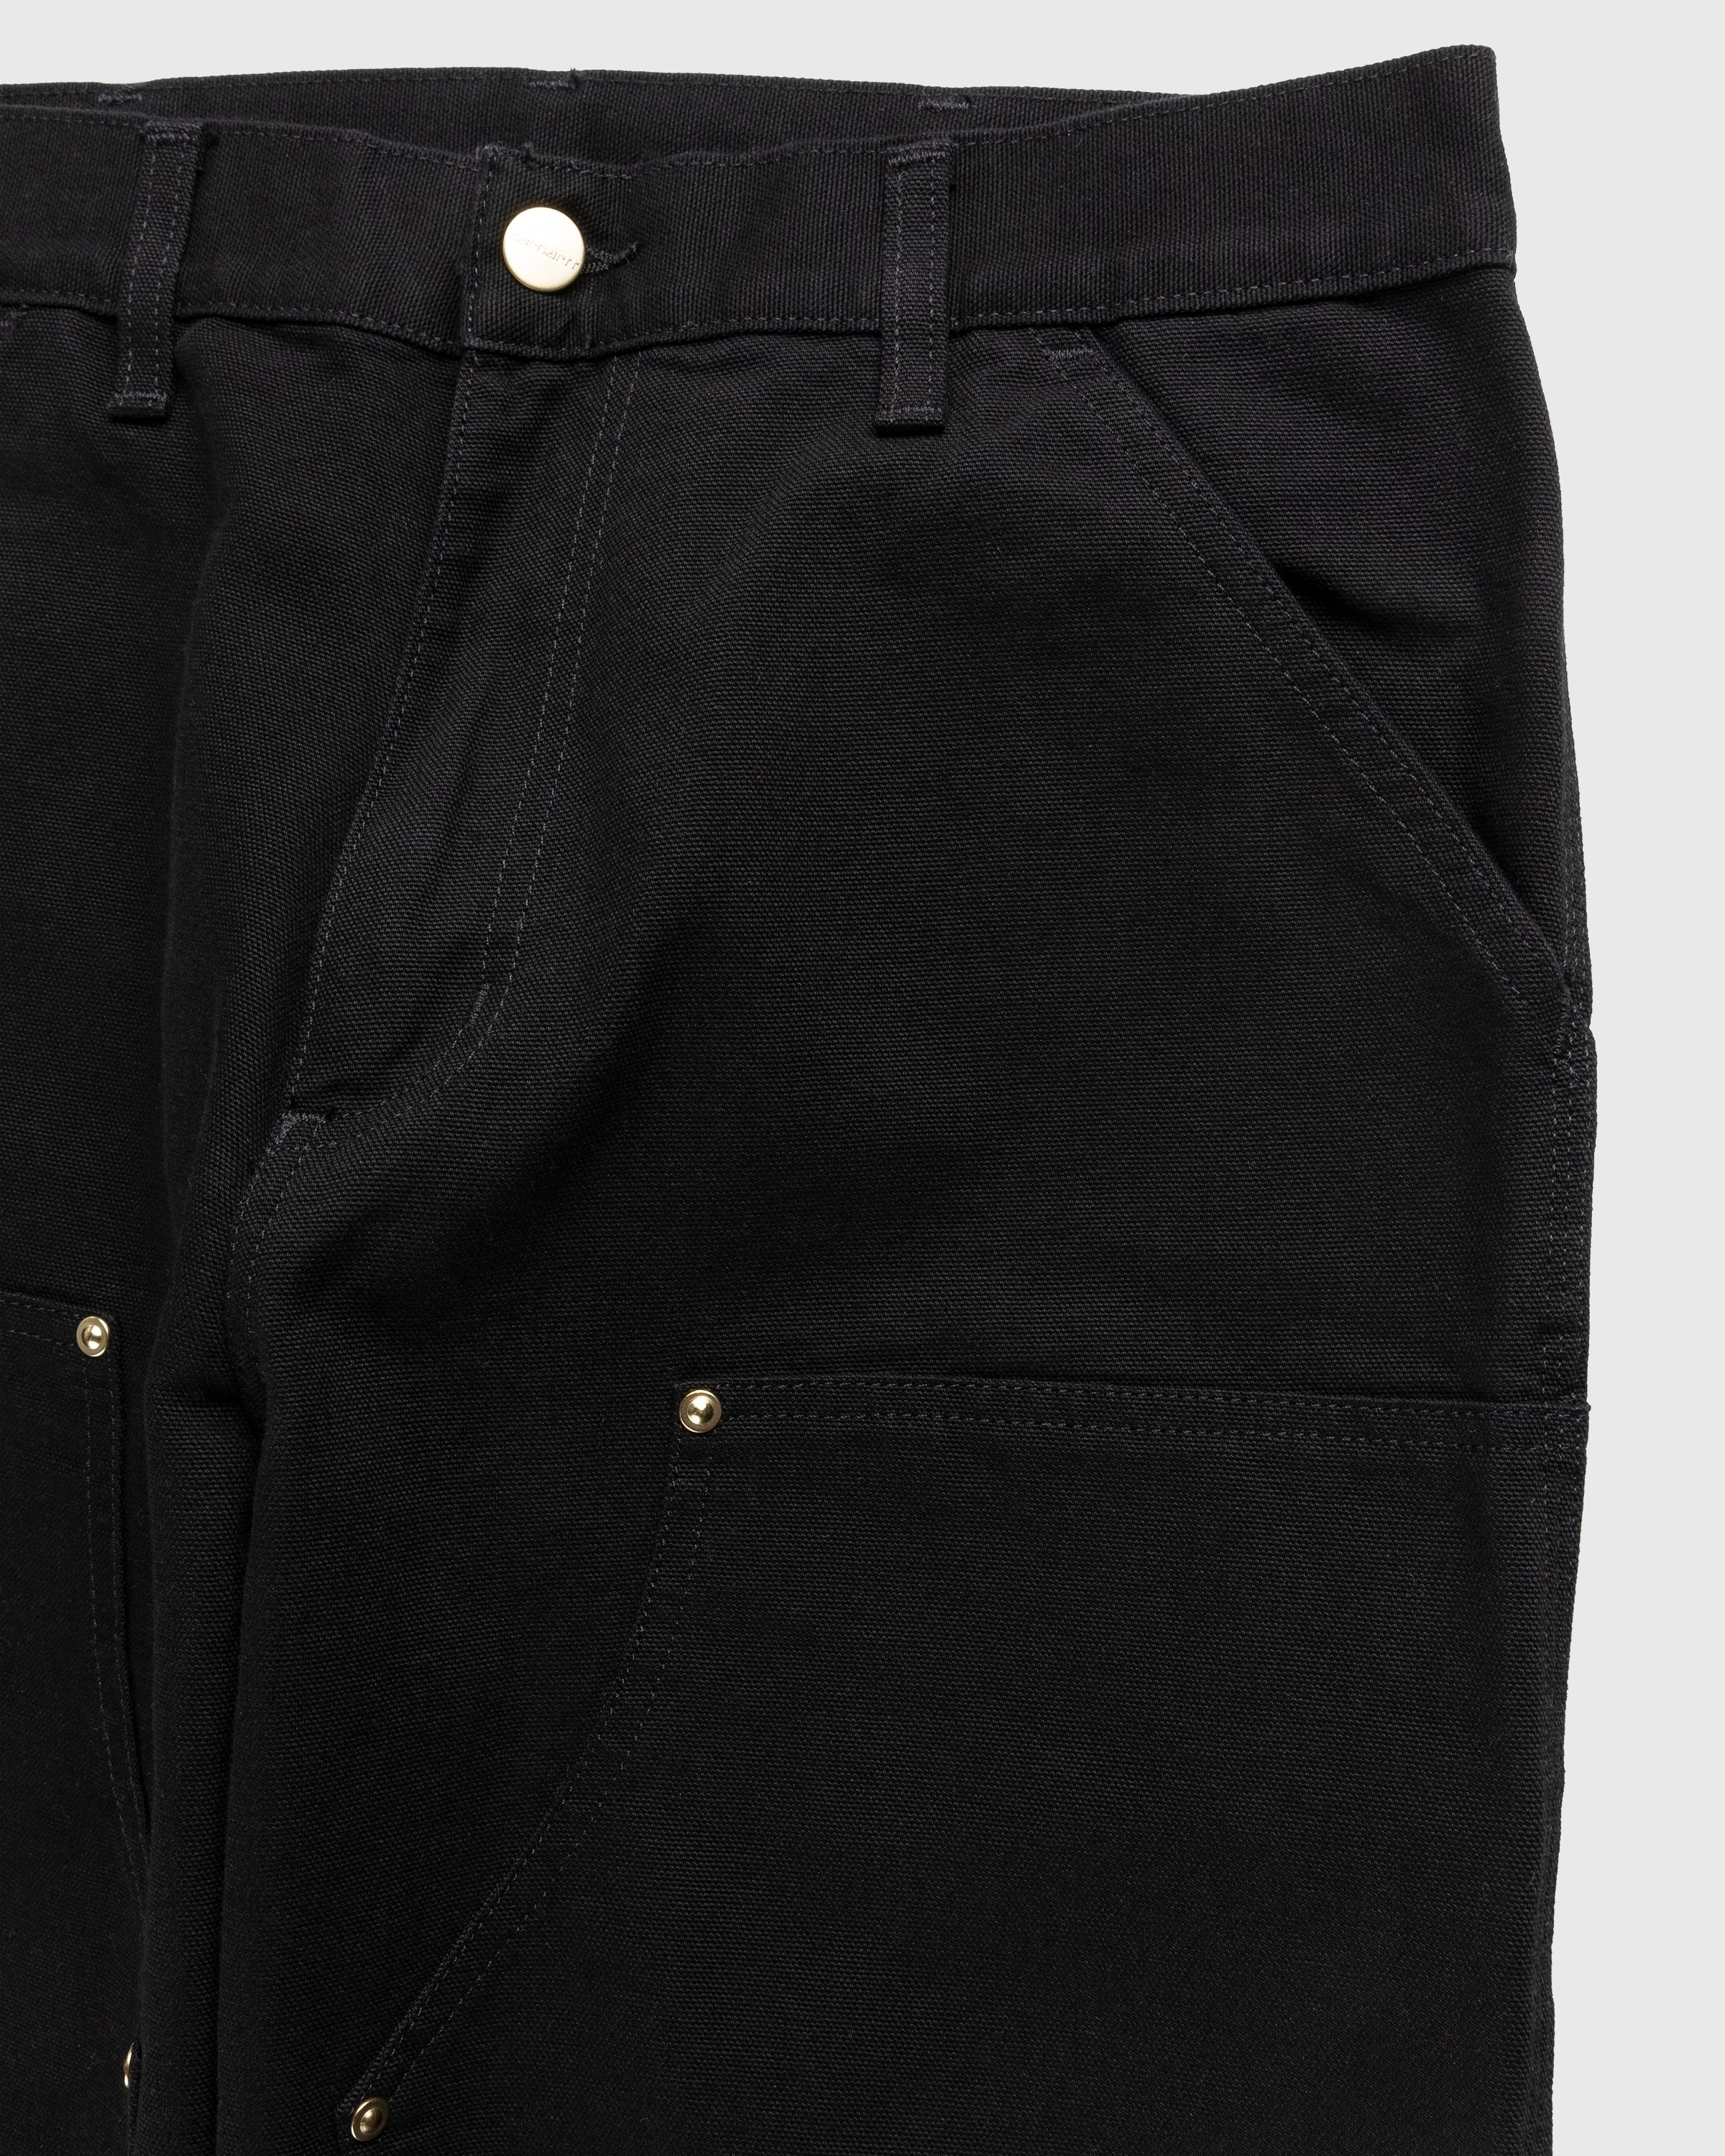 Carhartt WIP – Double Knee Pant Black - Pants - Black - Image 3